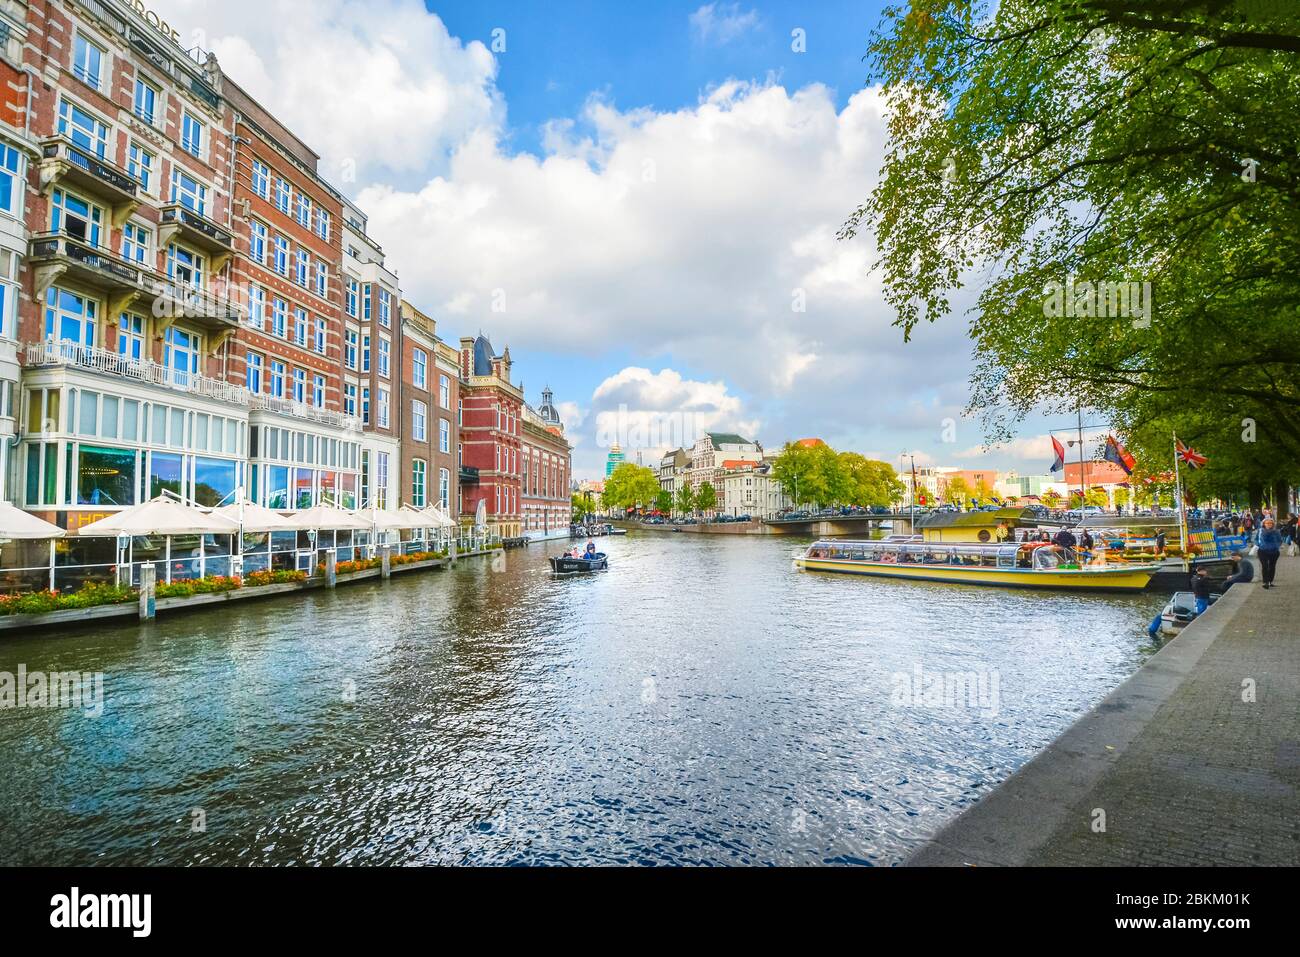 Ein kleines Boot gleitet vergangenen touristischen Boote auf einem großen Kanal in der Nähe des Museumsviertels von Amsterdam im frühen Herbst. Stockfoto